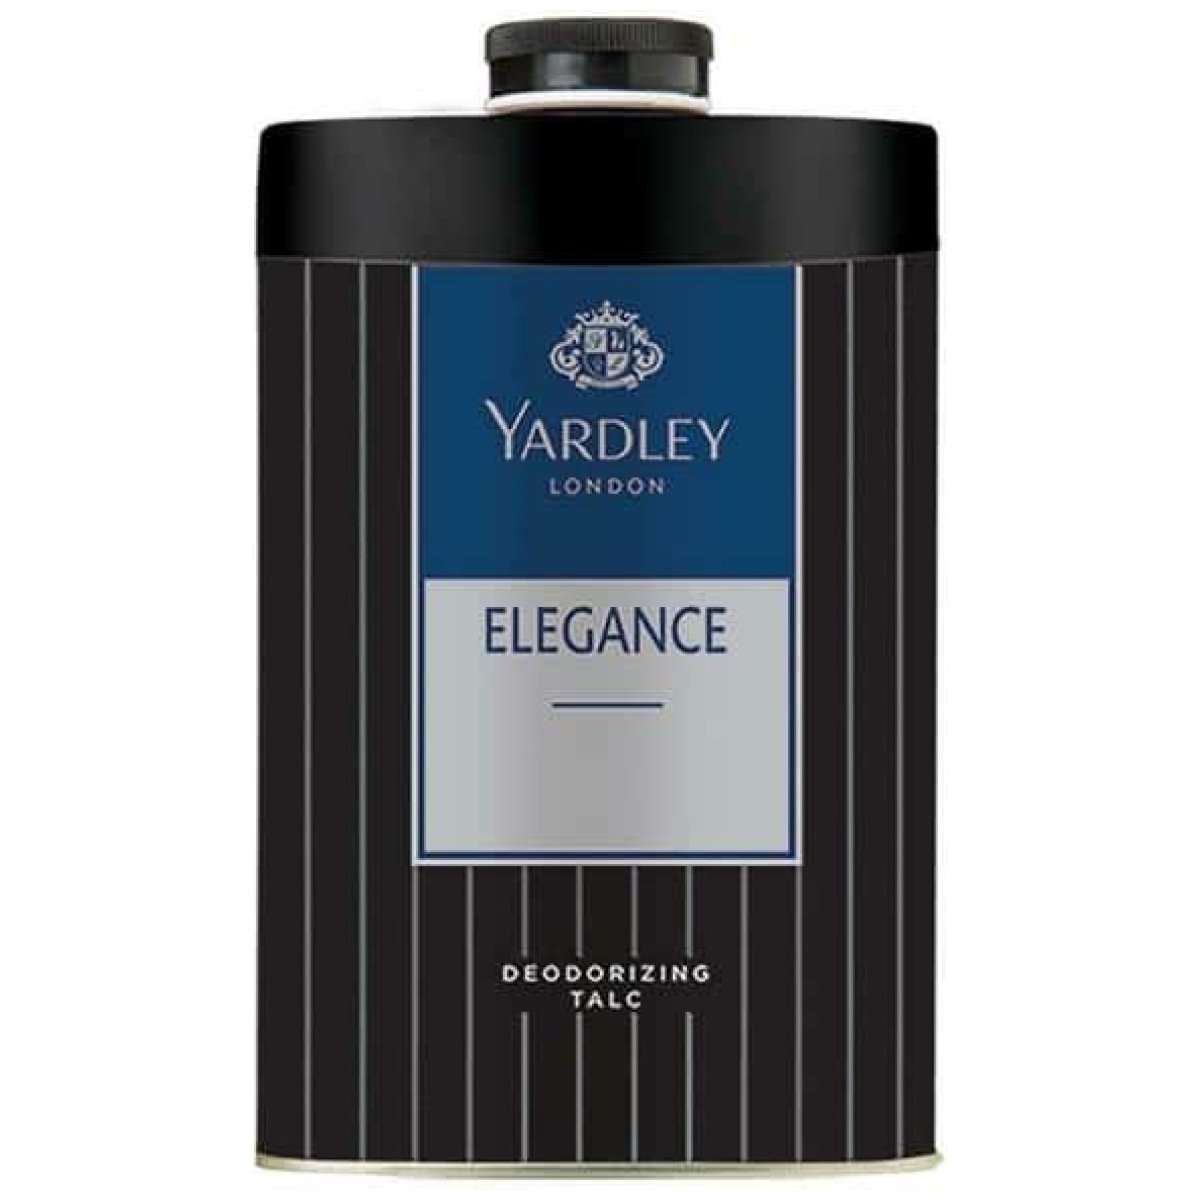 Yardley London Elegance Deodorizing Talc For Men 250G